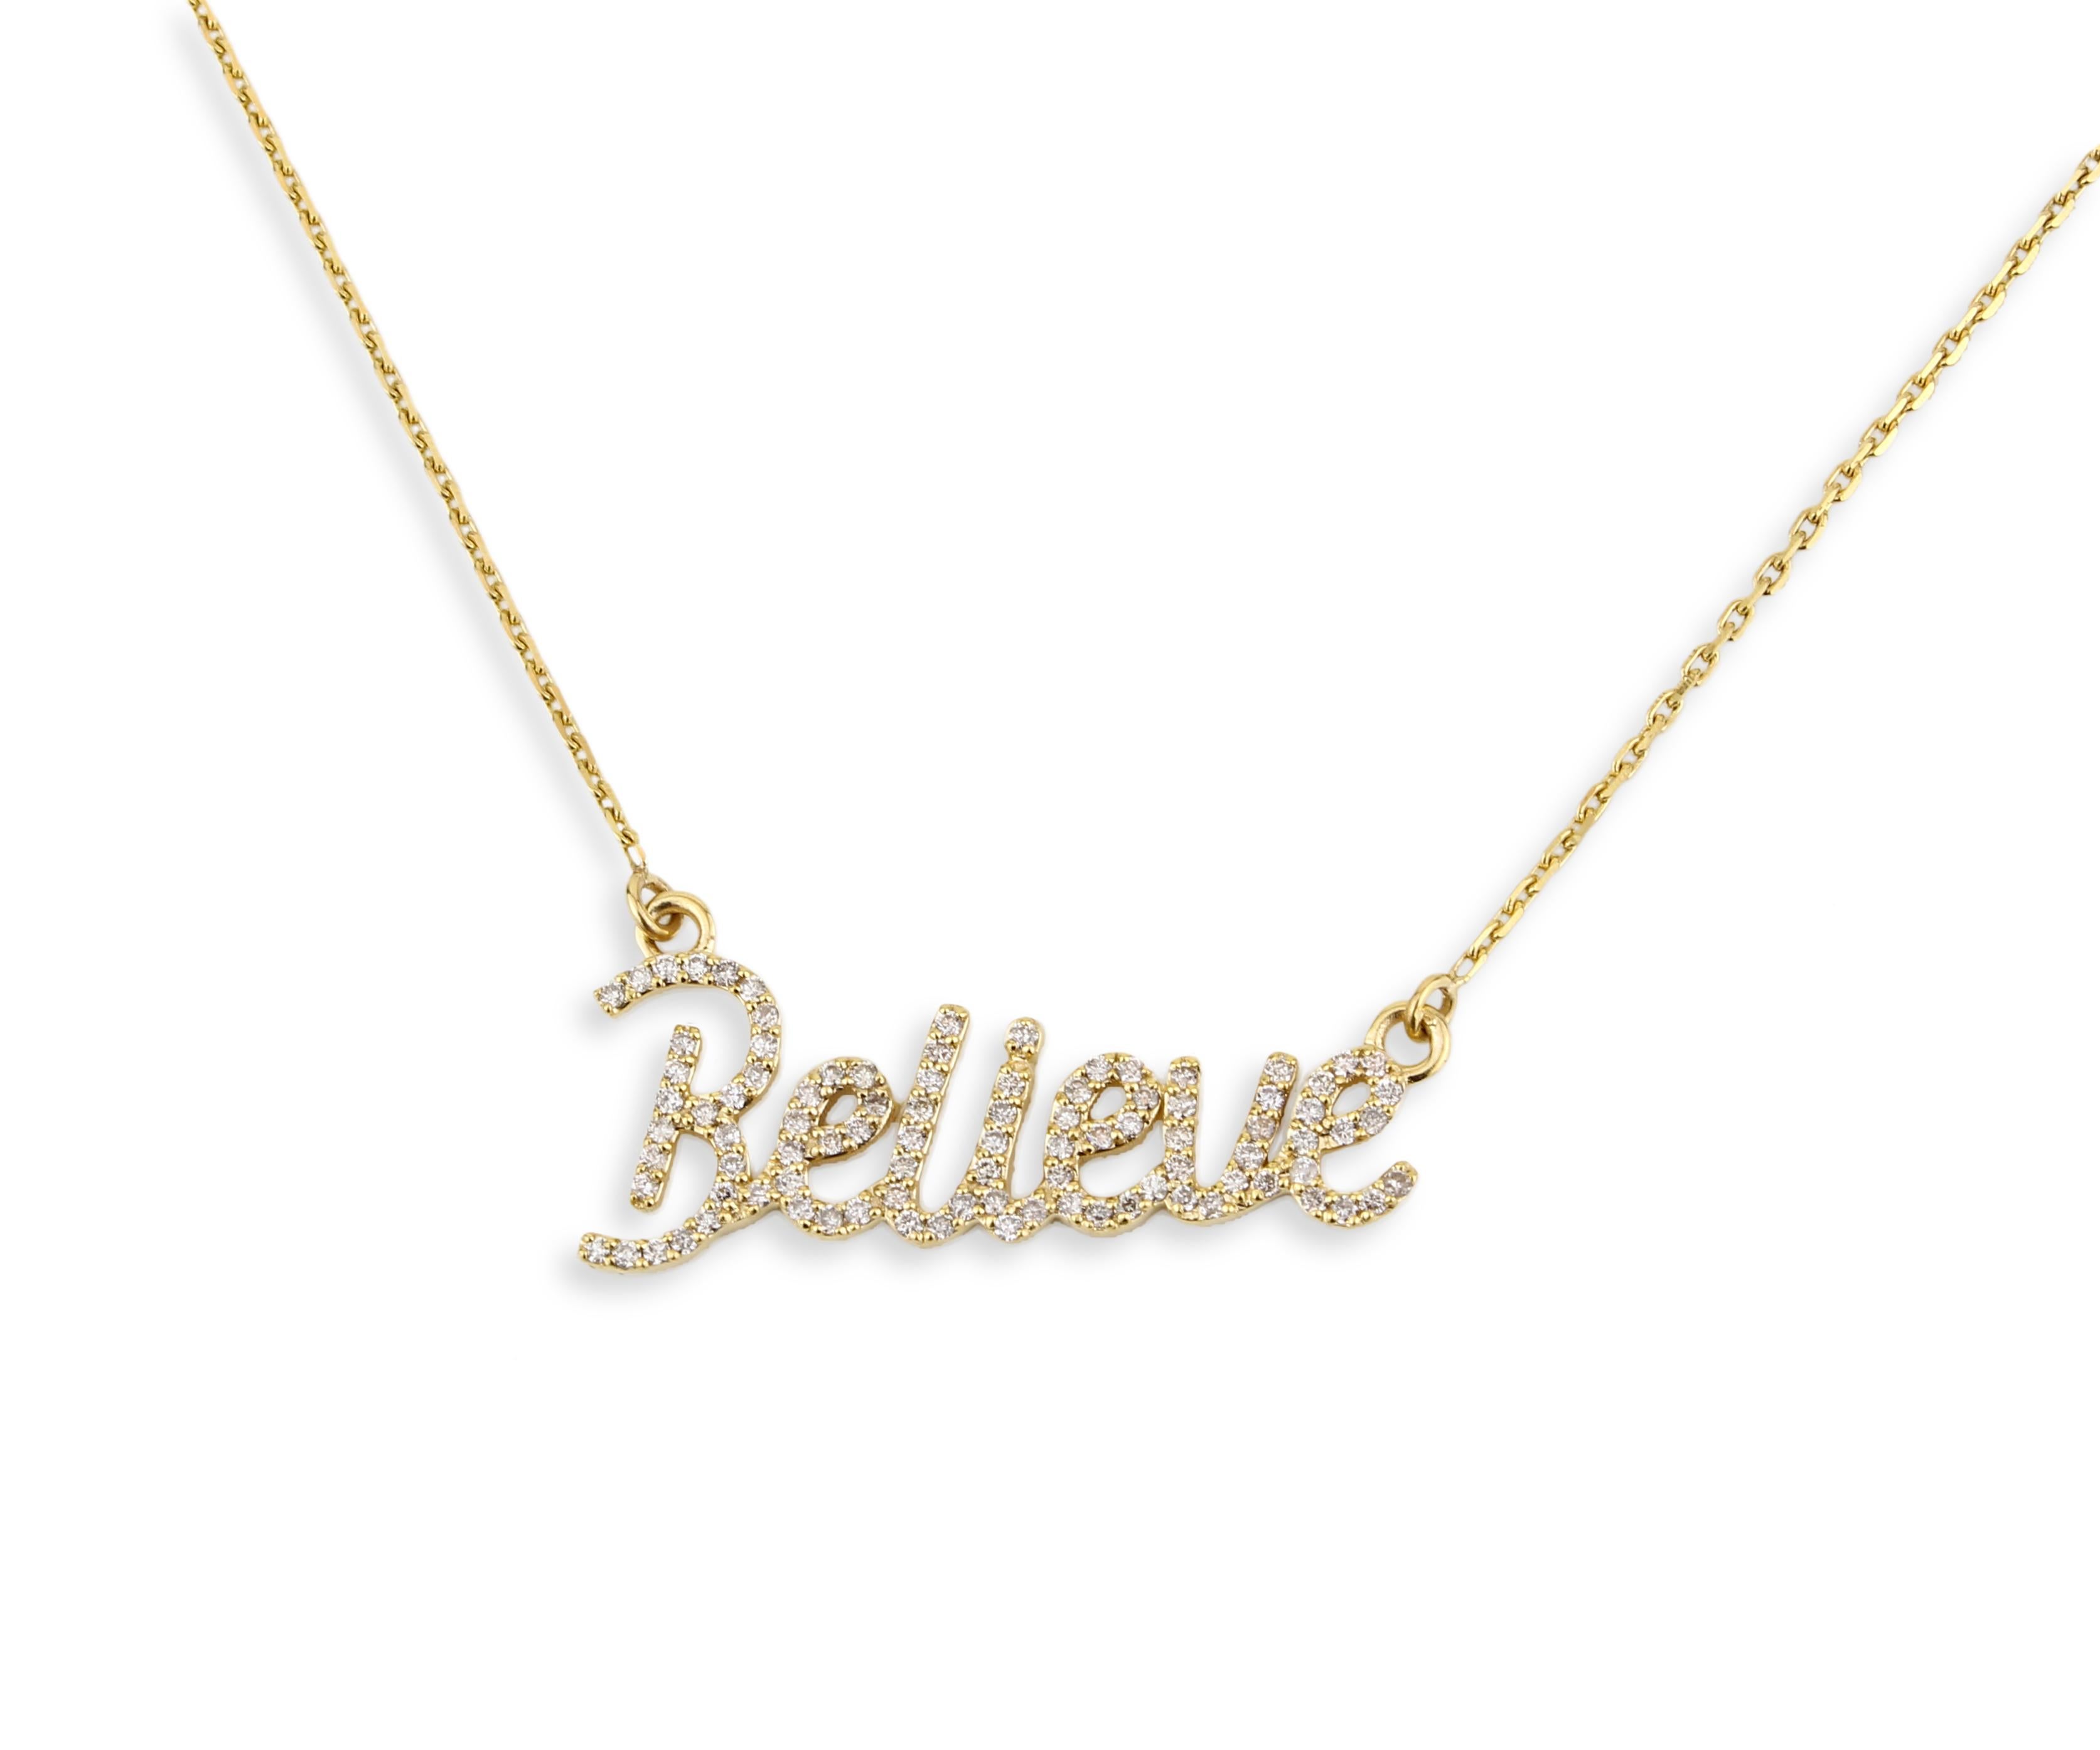 Le collier pendentif Diamond Manifest est un collier pendentif sophistiqué en or avec le mot 